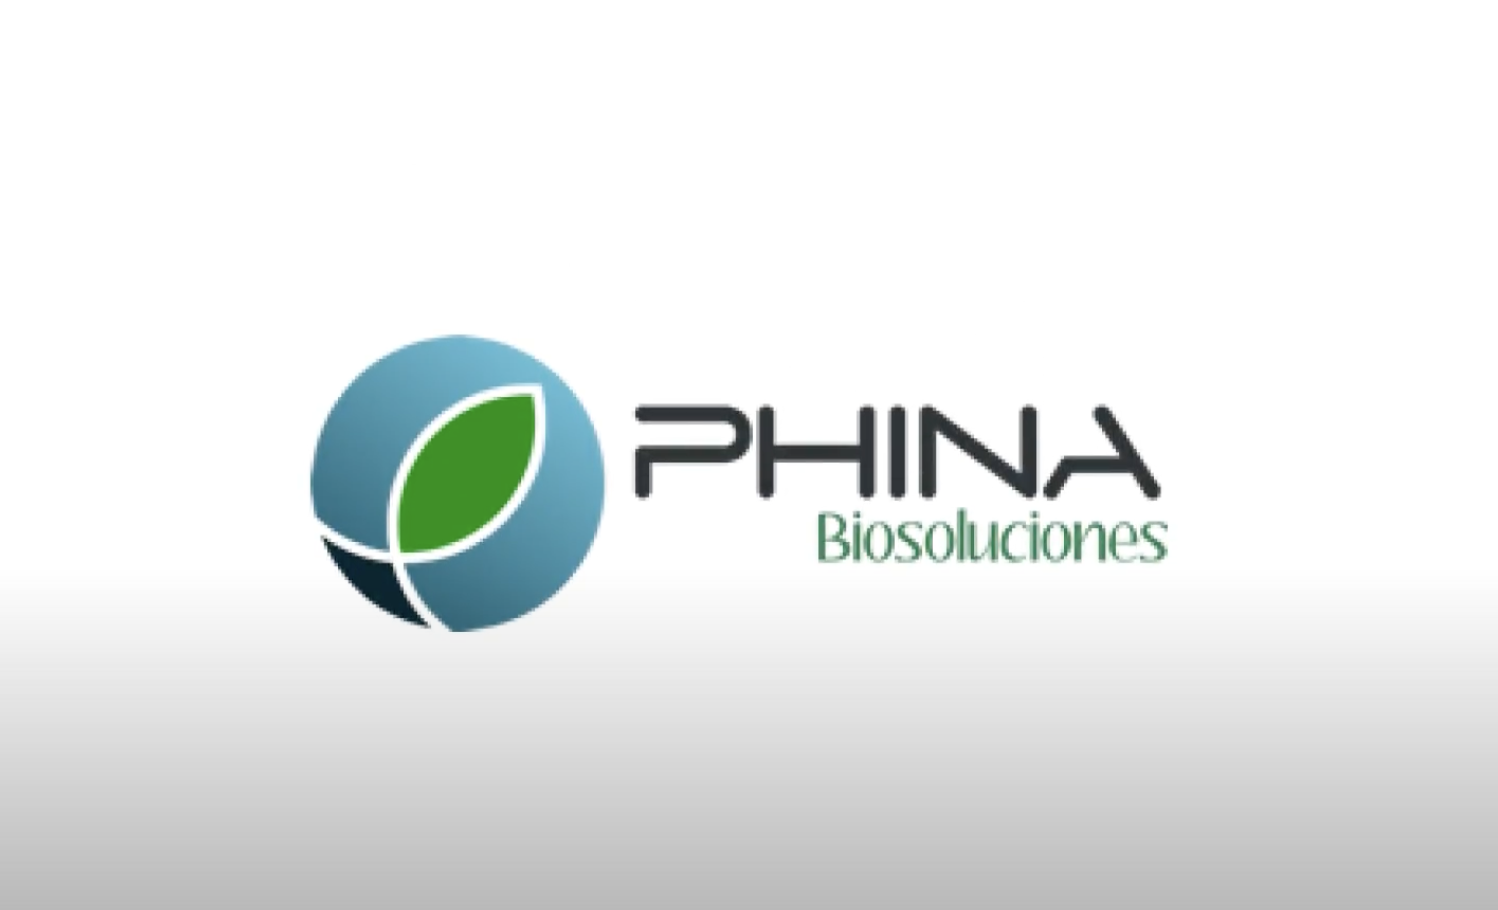 PHINA BIOSOLUCIONES S.A.S